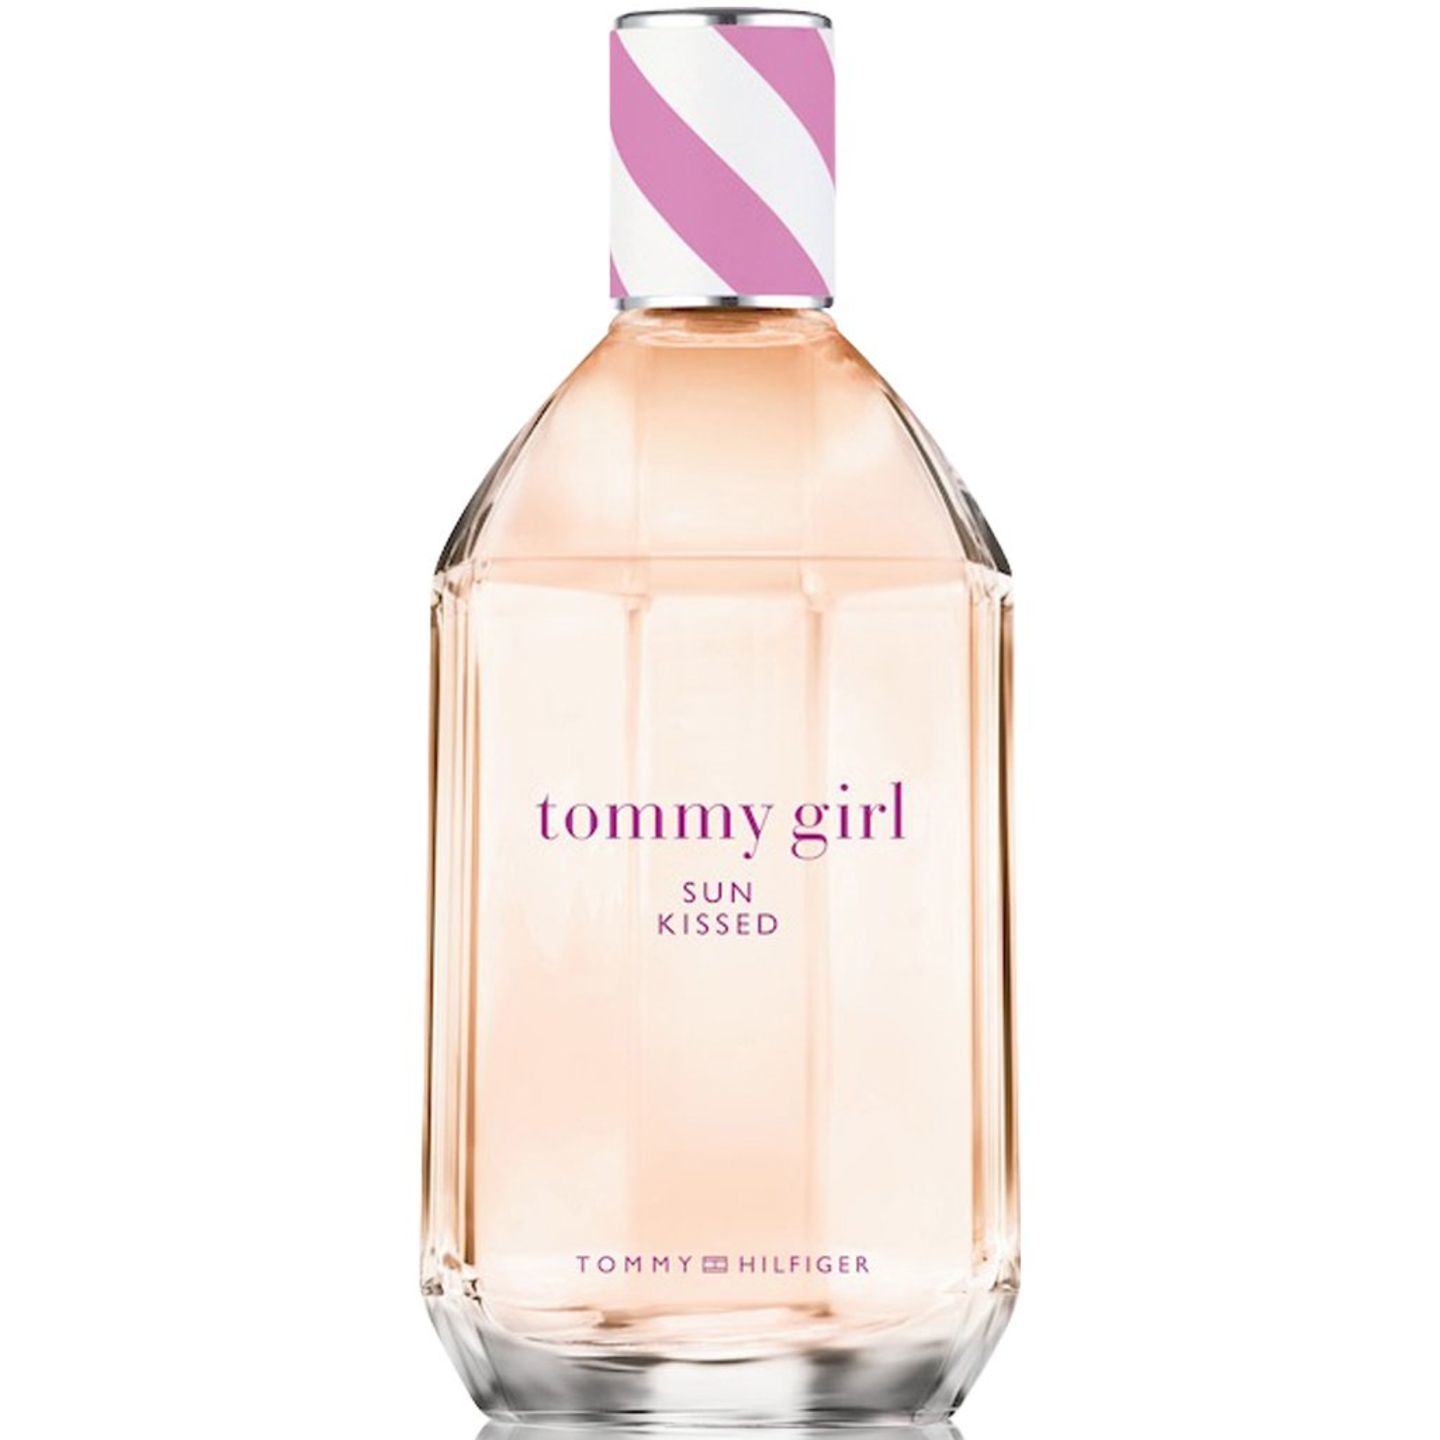 Tommy Girl Sun Kissed ist eine limitierte Edition, deren Duft an die Frische und Lässigkeit einer Meeresbrise erinnern soll. 100 ml, 39,90 Euro 